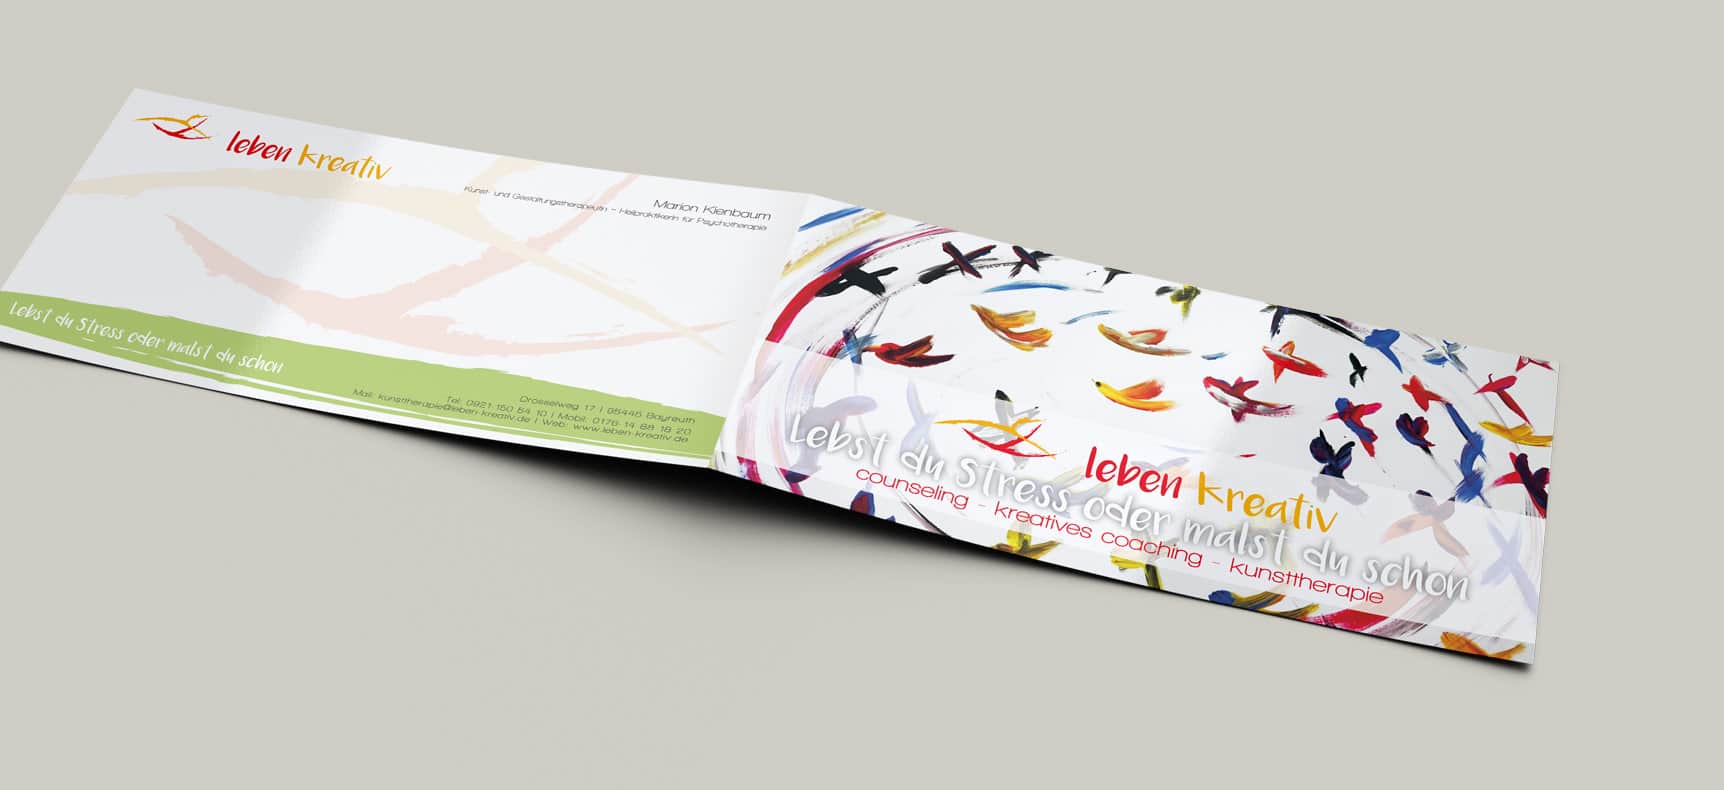 Atelier Kienbaum Leben Kreativ | Corporate Design entwickelt von StatusZwo.com